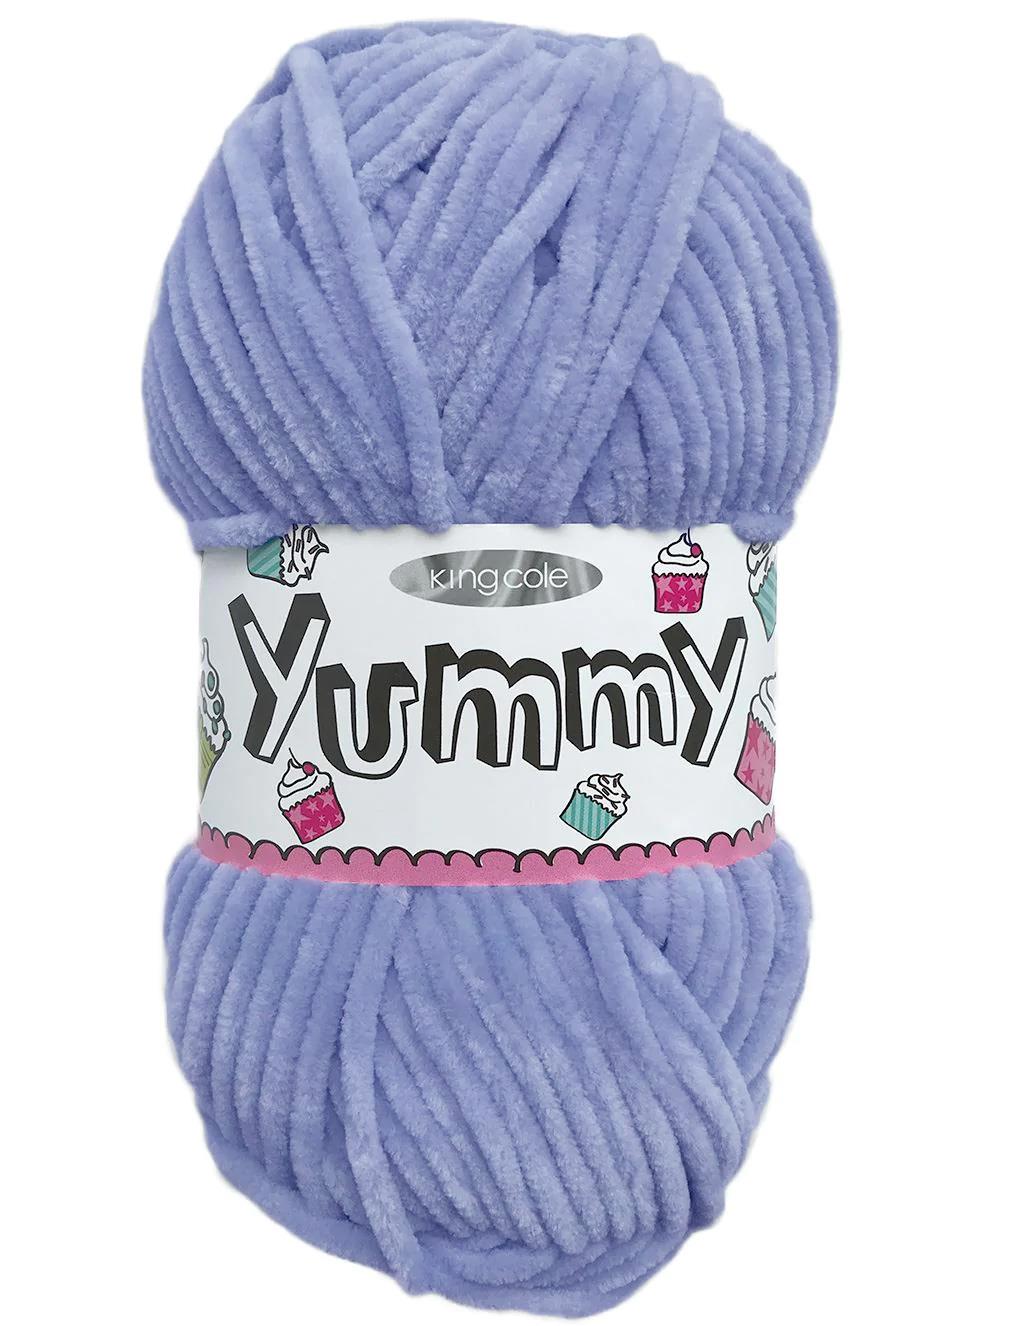 King Cole Yummy Ocean Blue (4741) chenille yarn - 100g